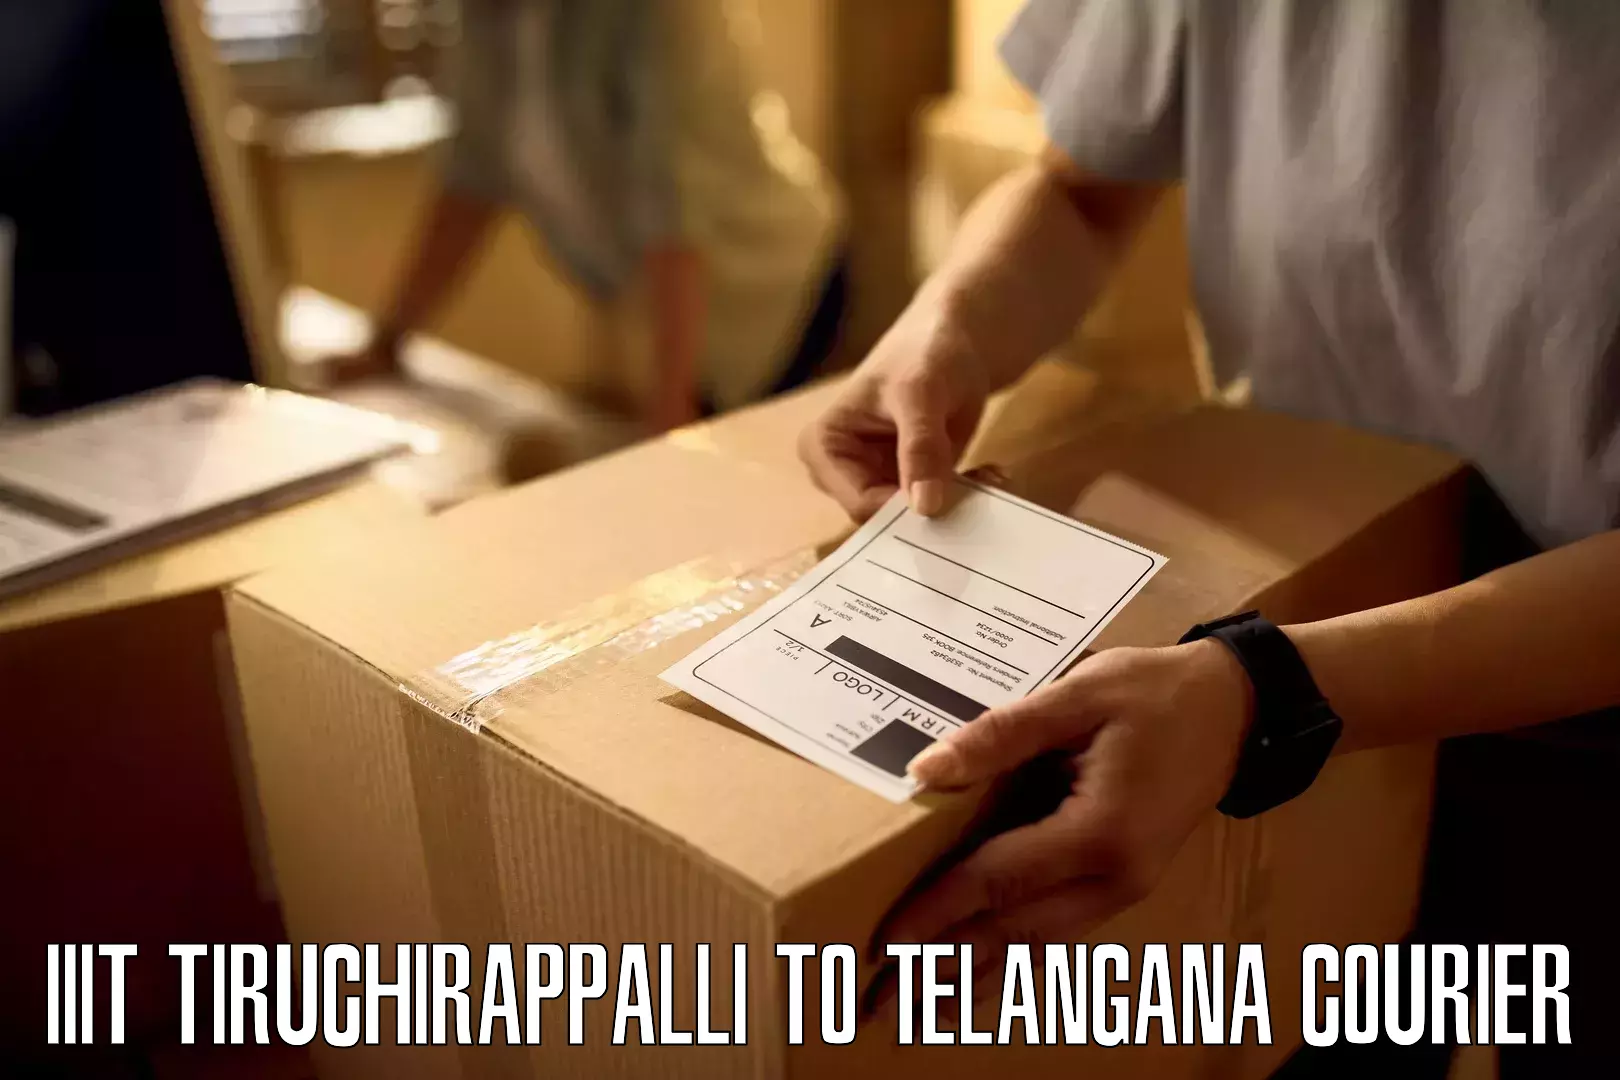 Return courier service in IIIT Tiruchirappalli to Navipet